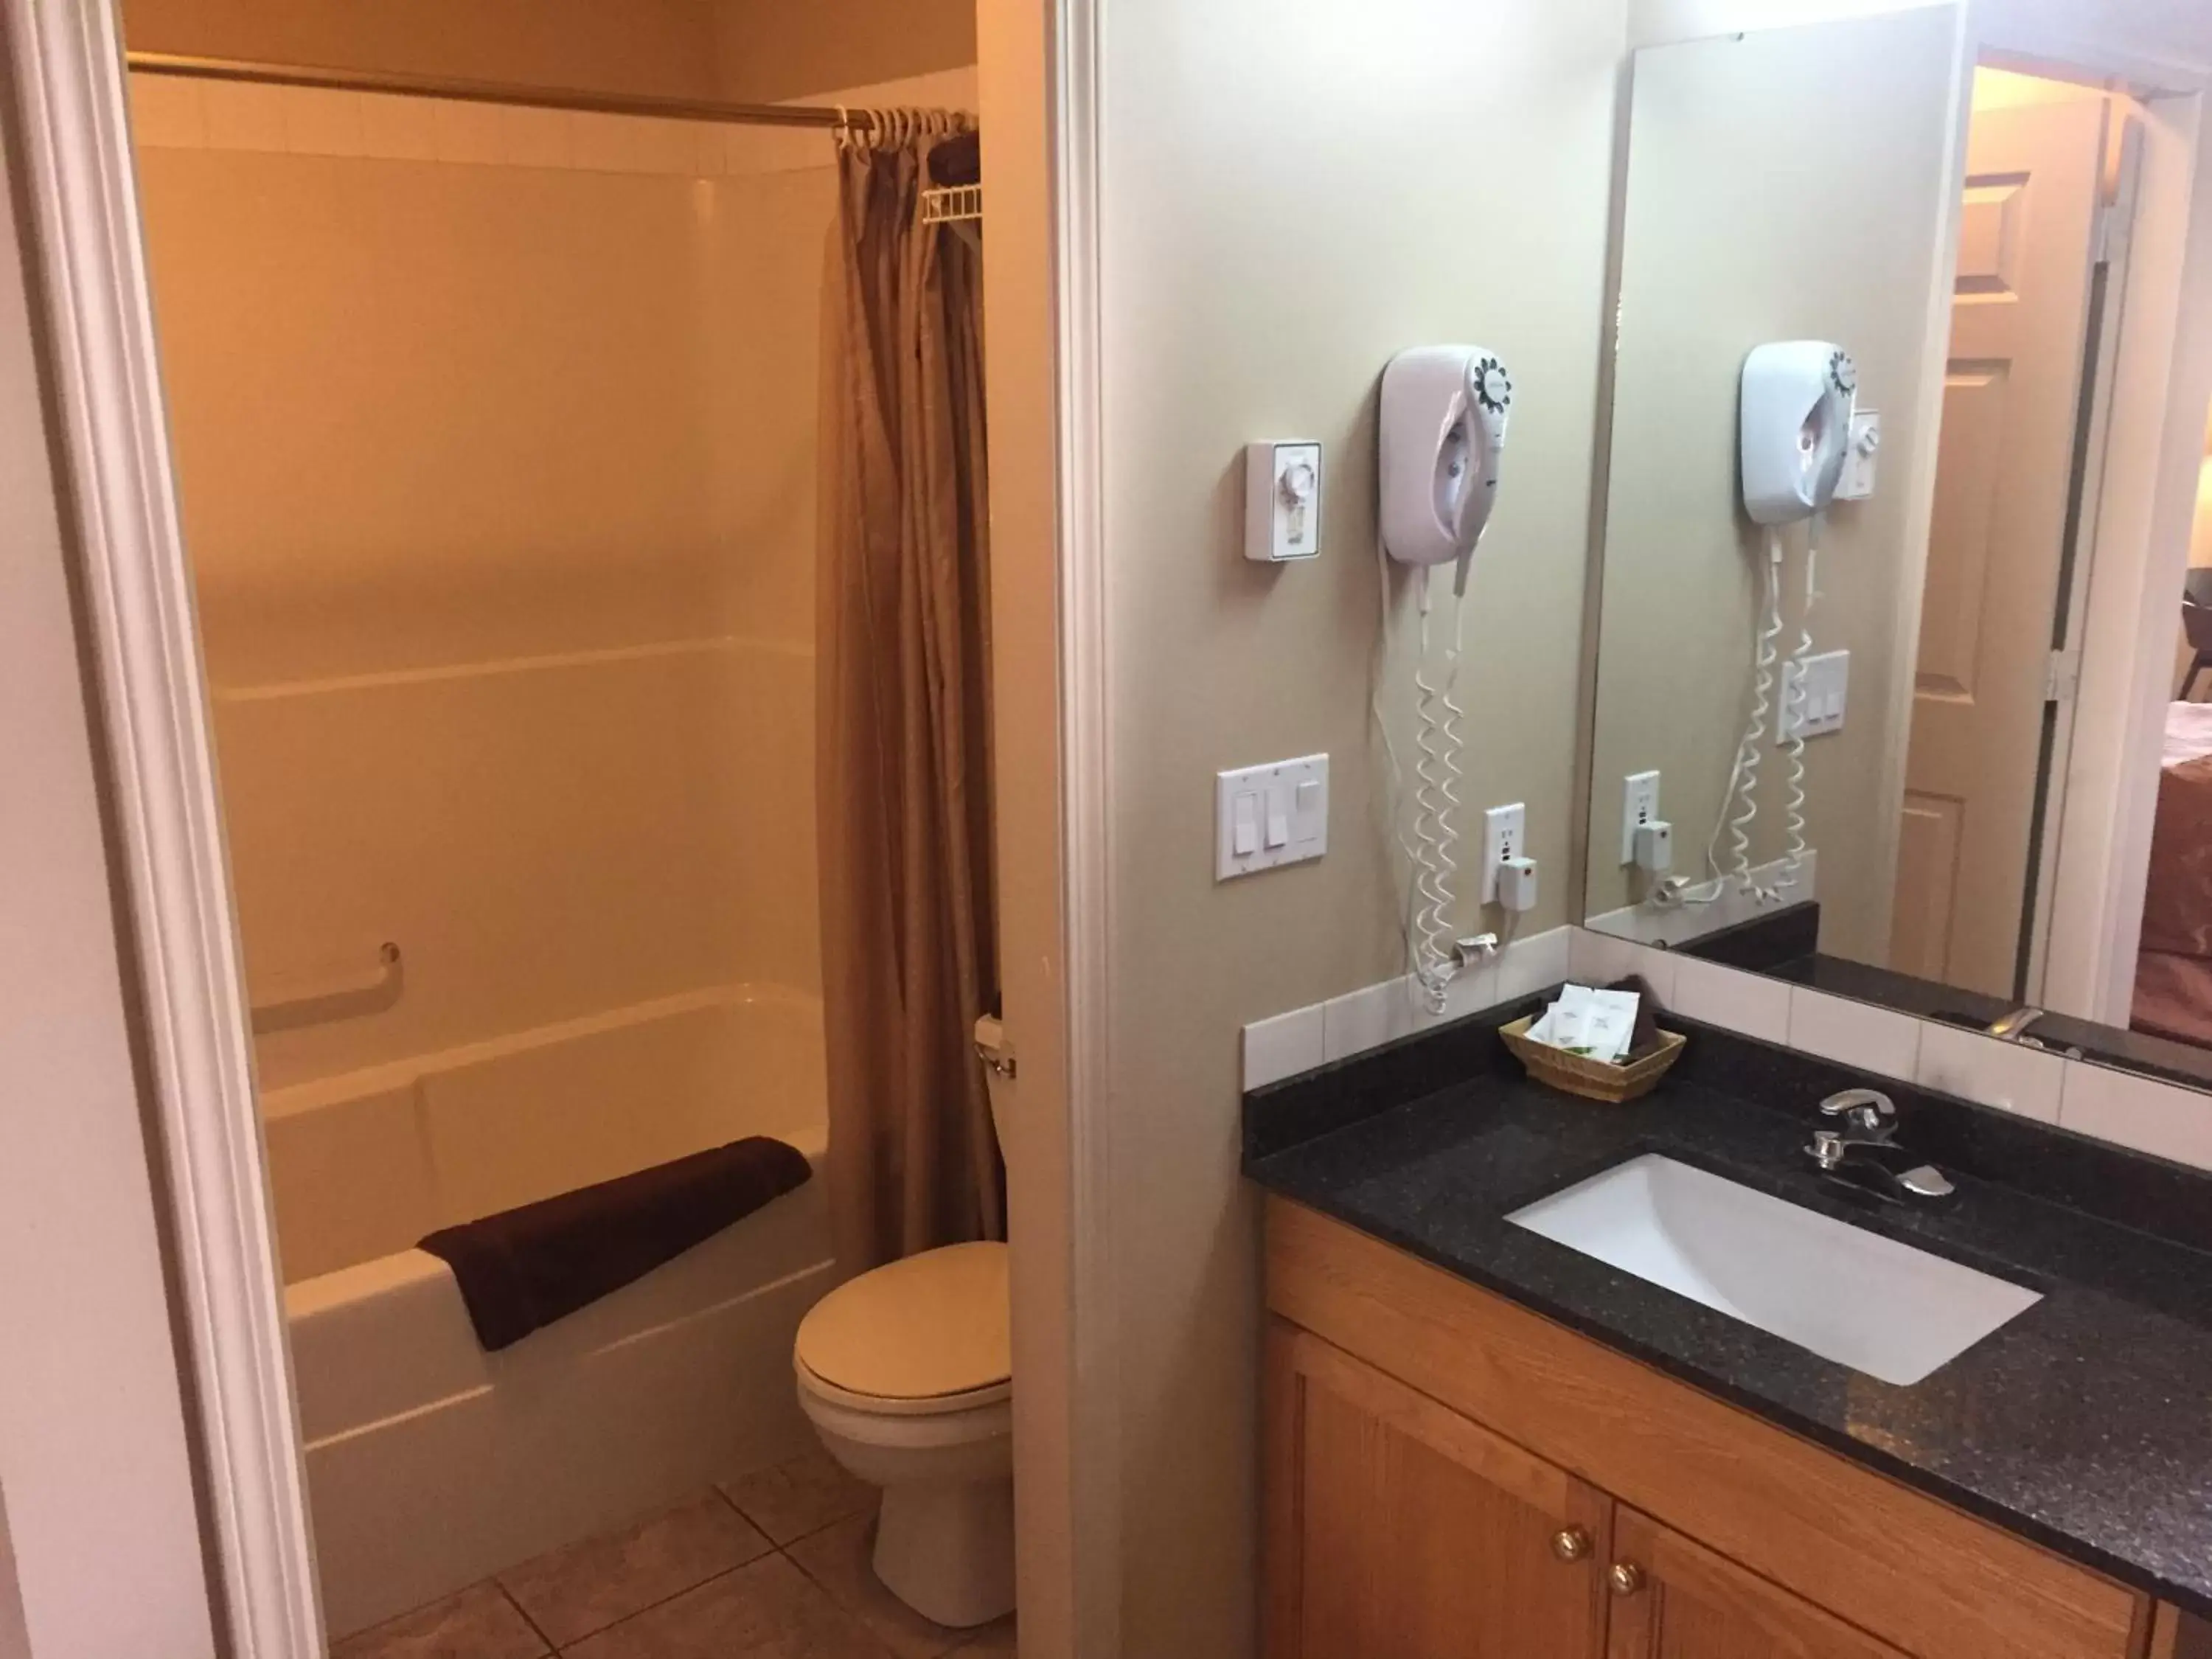 Toilet, Bathroom in Avalon Inn